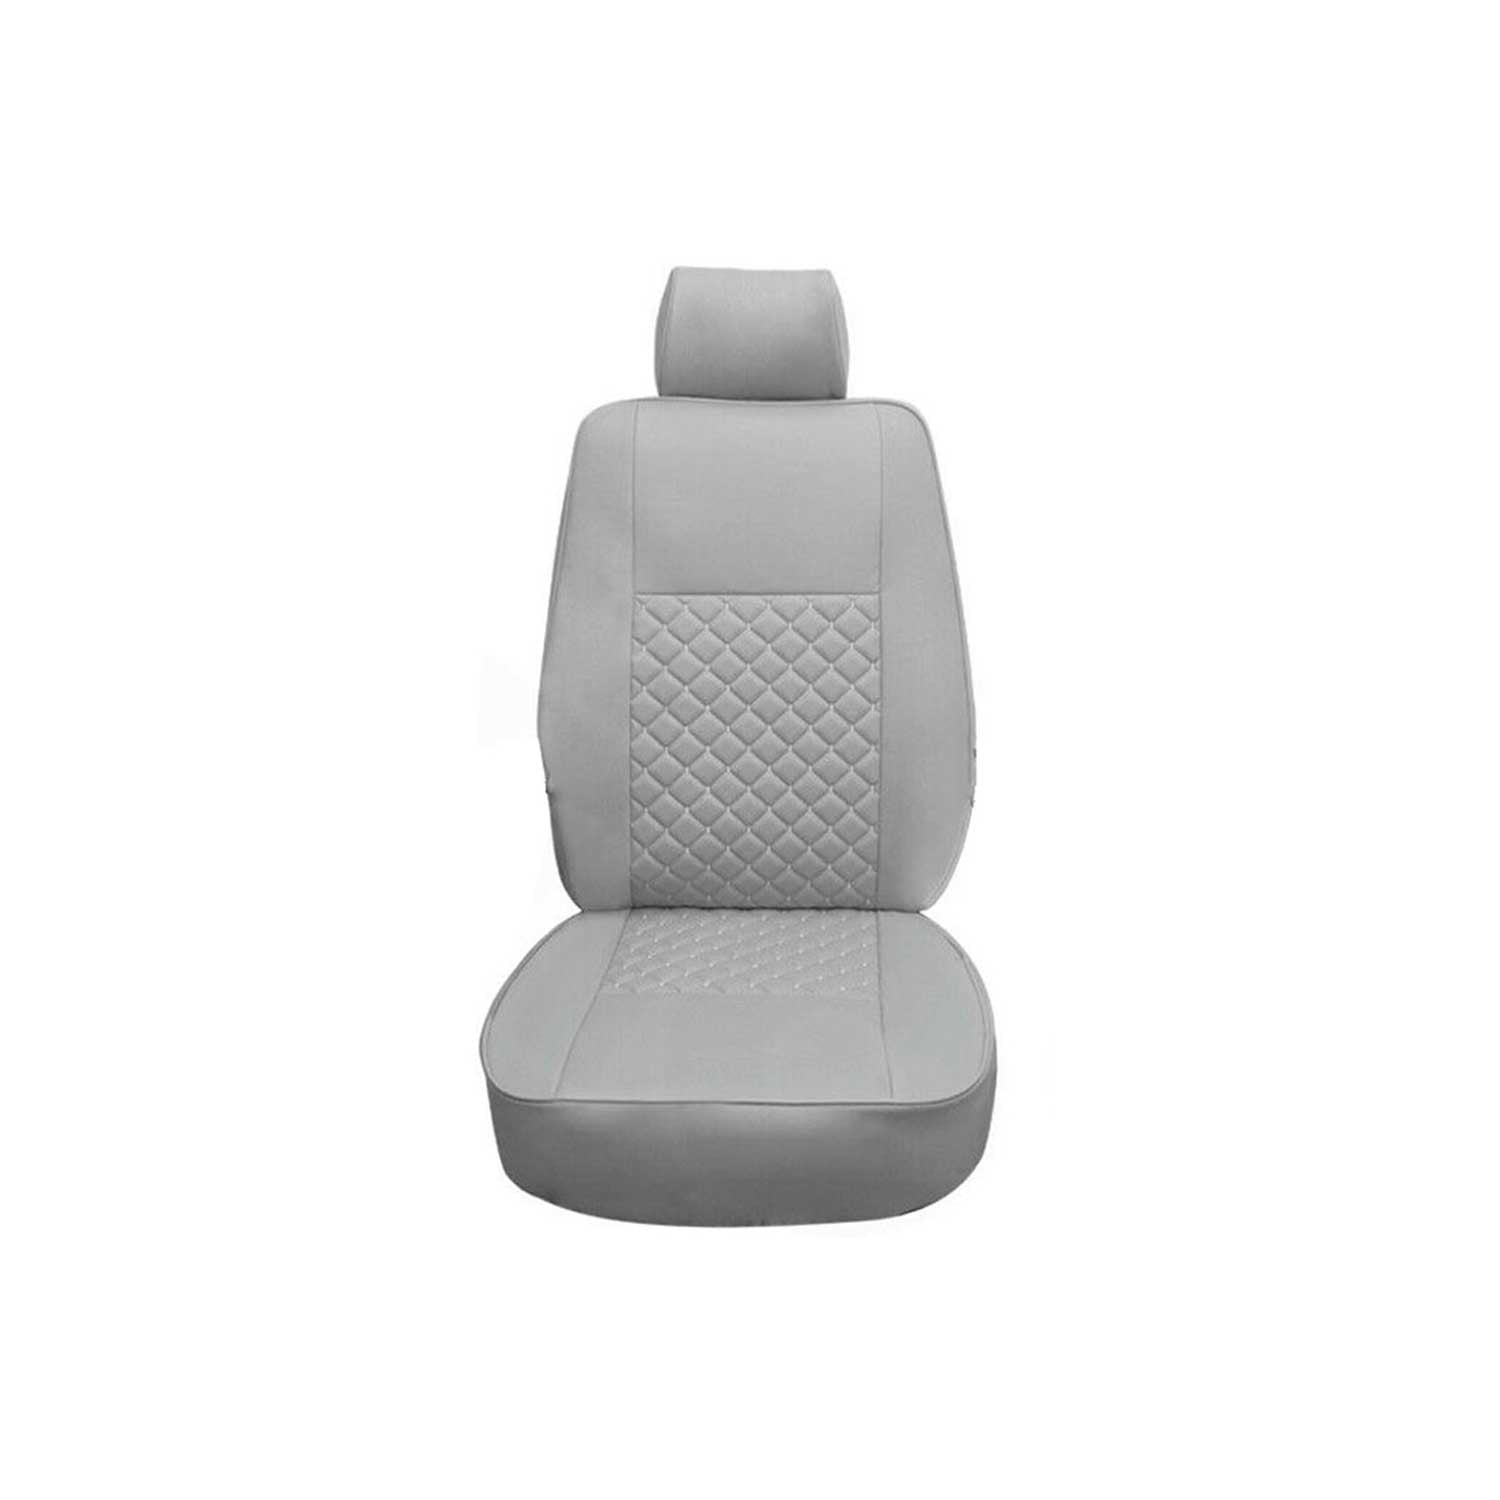 Transporter Autositzbezug, Sitzbezug, 1 x monoplace 1 x Double siège,  Volkswagen T5, Couleurs: gris